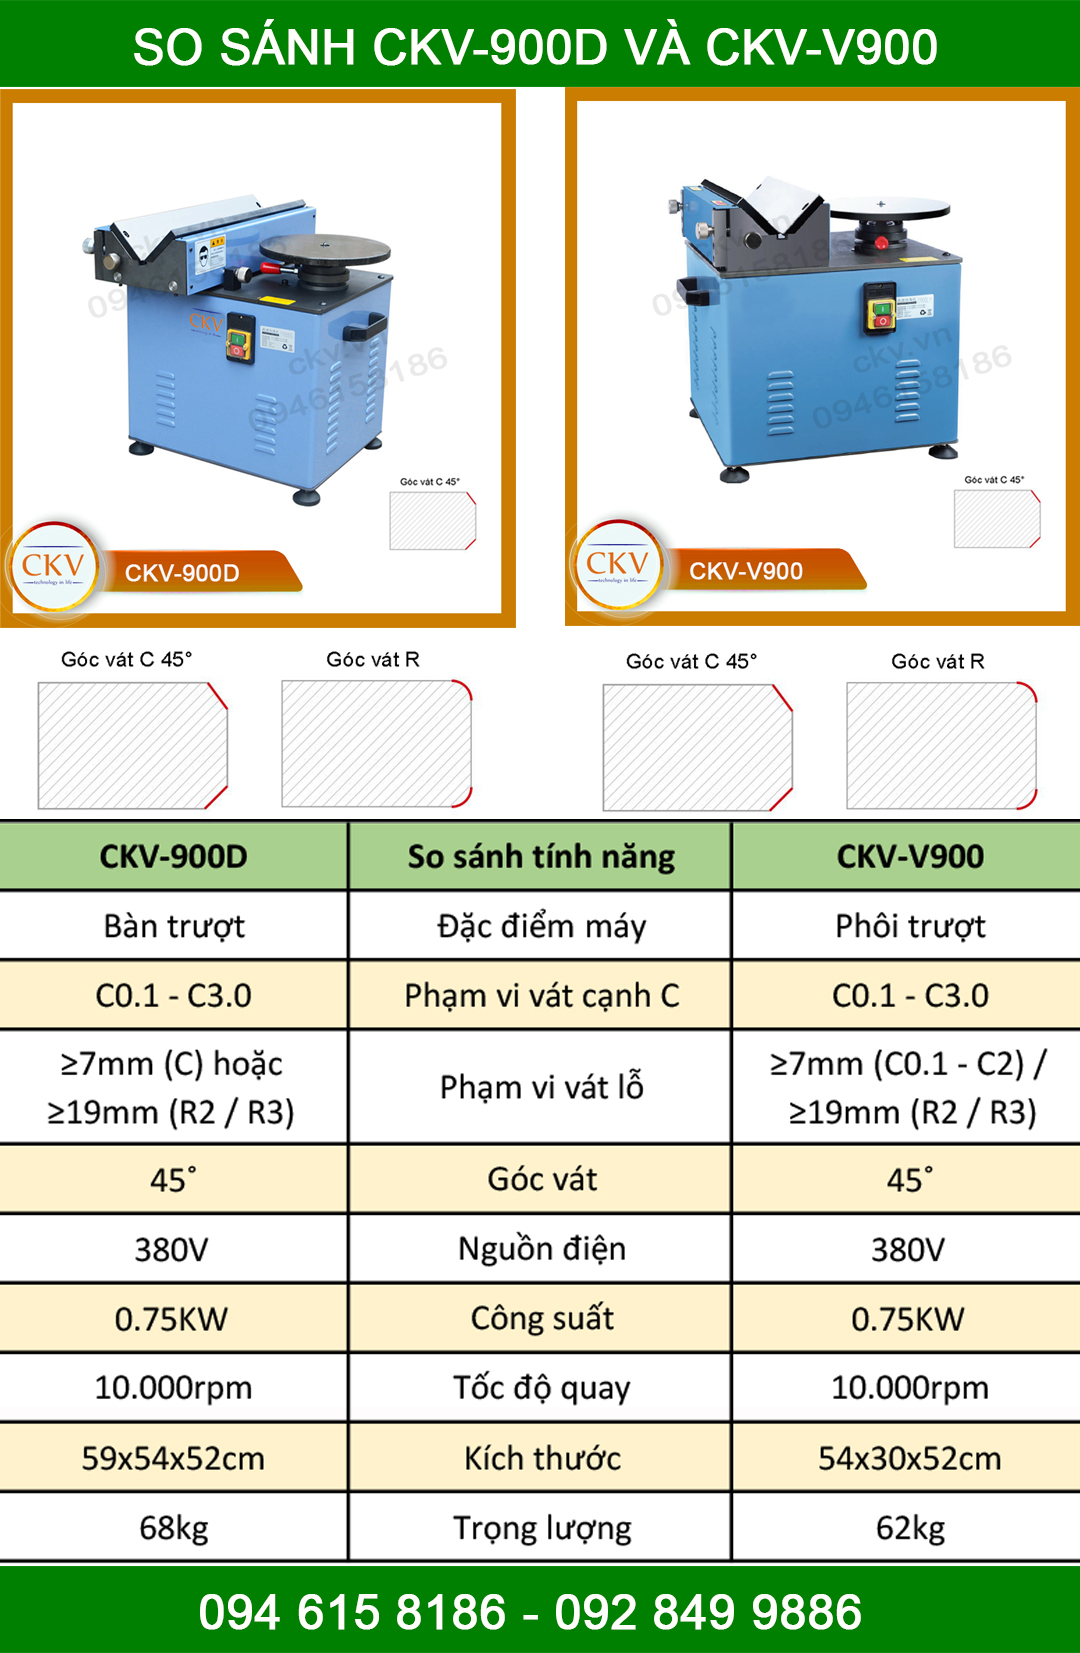 So sánh CKV-900D và CKV-V900